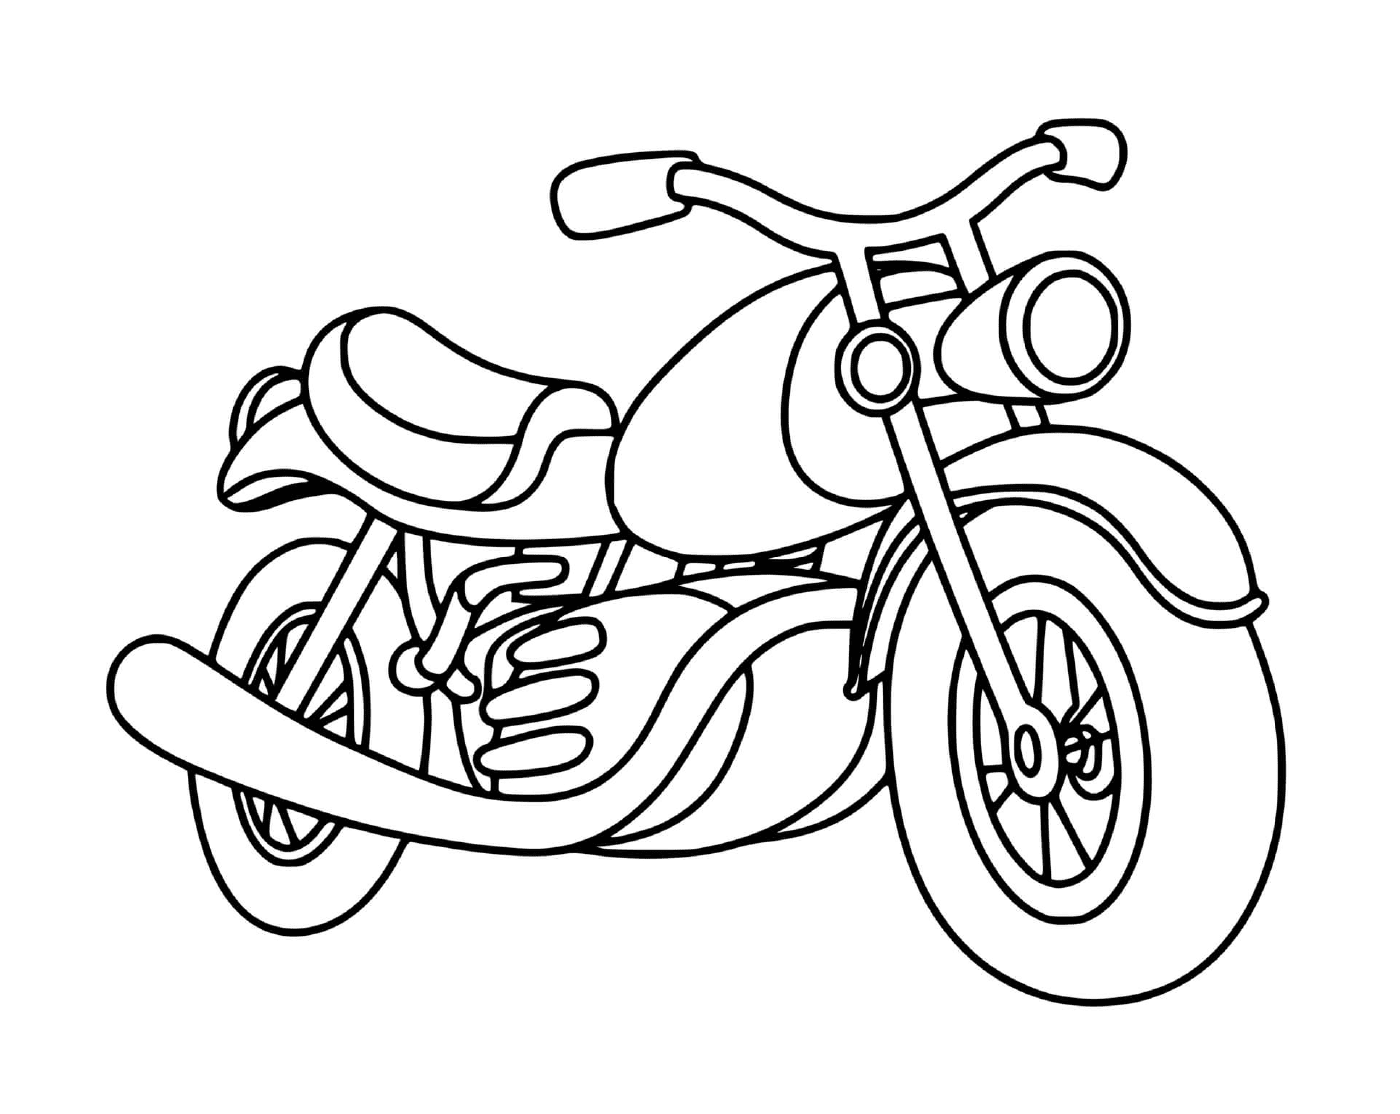  Классический мотоцикл, помещенный на землю 